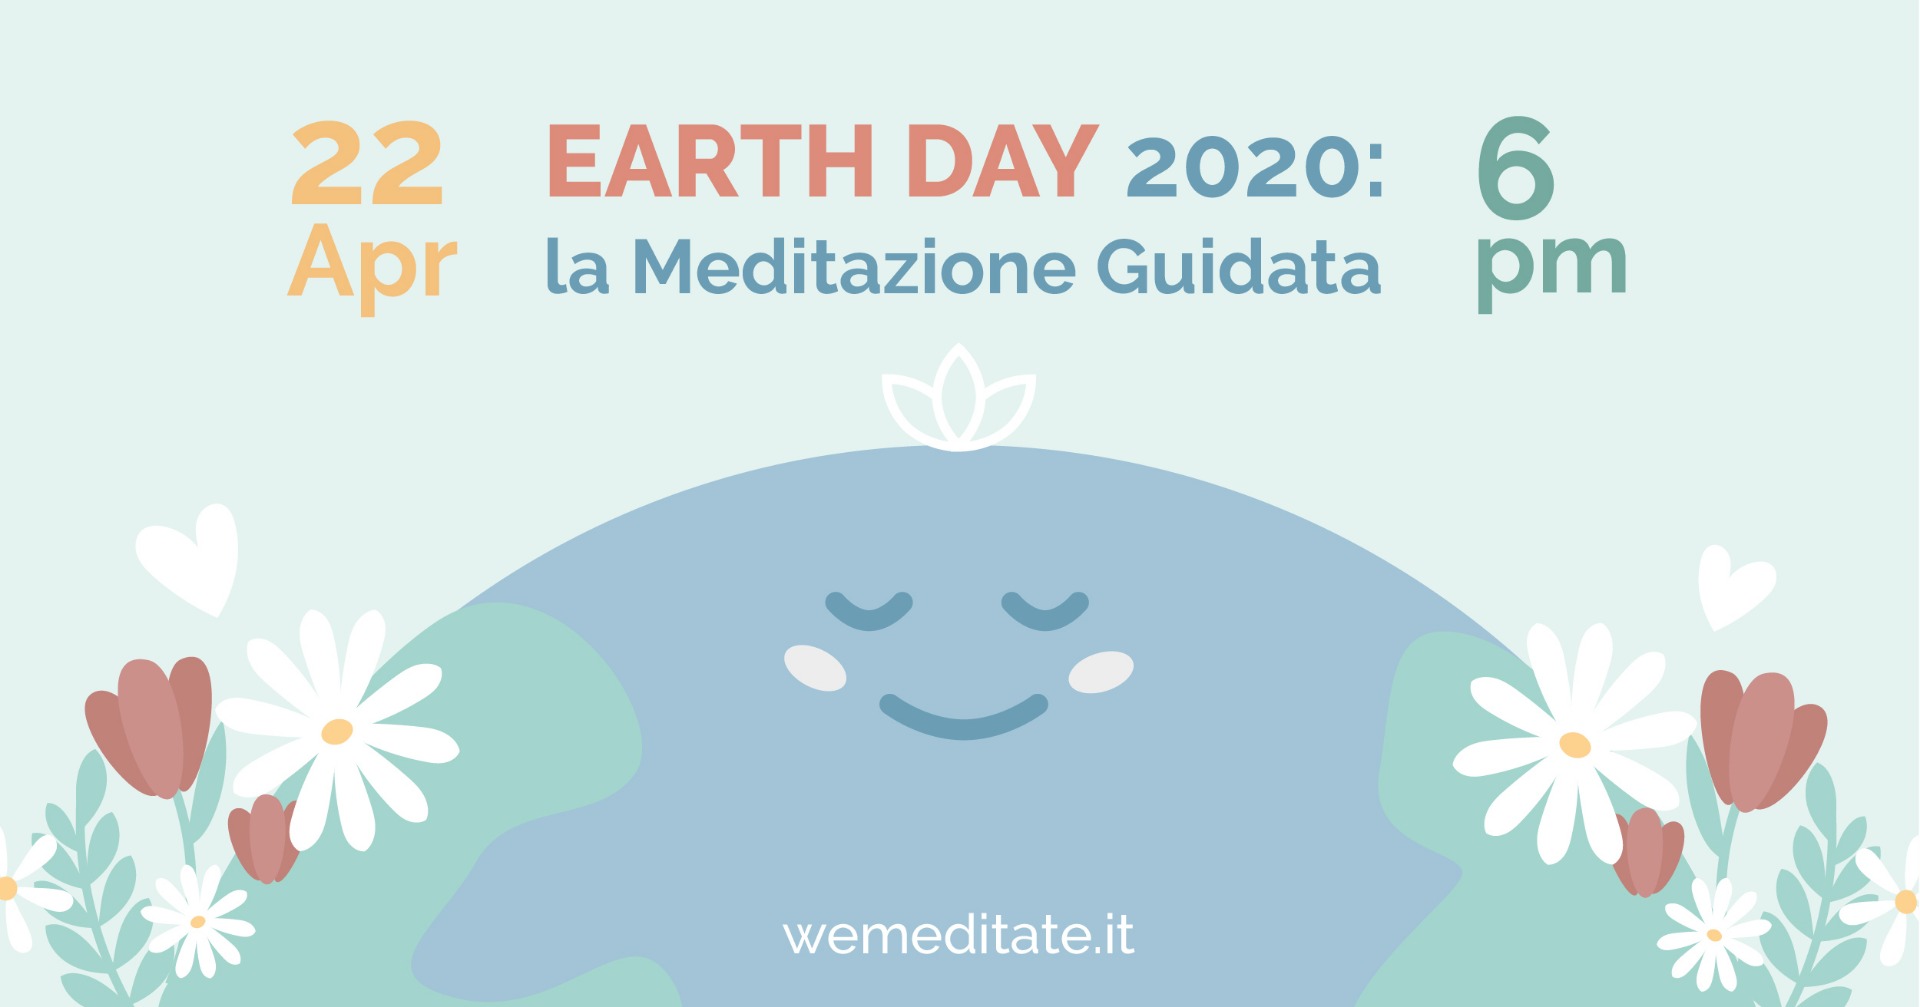 EARTH DAY 2020: La Meditazione Guidata